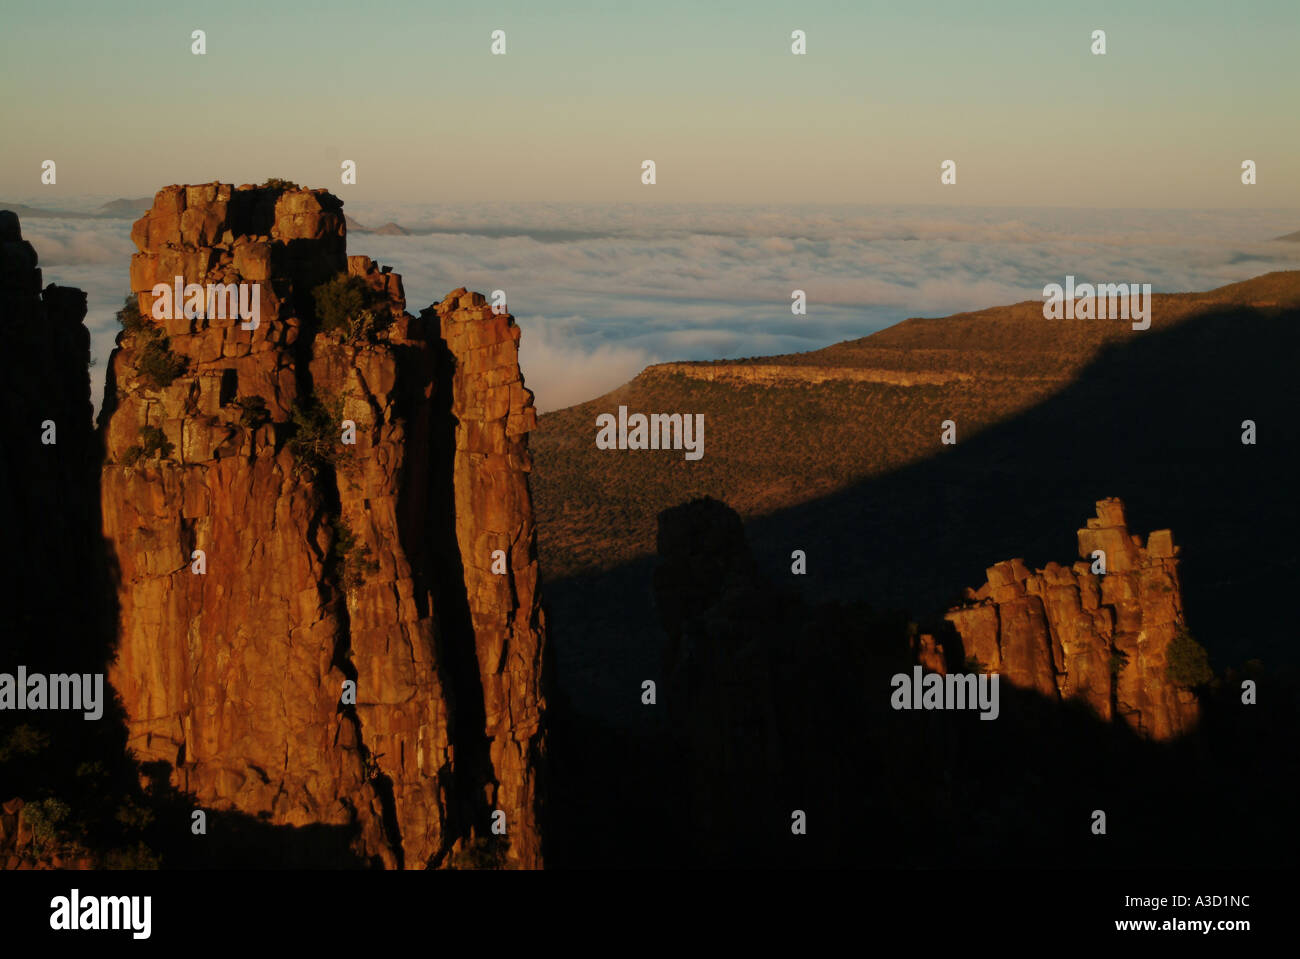 Valle della desolazione nel Capo orientale. Un fenomeno geologico; una scogliera di fronte, dichiarata monumento nazionale. Foto Stock